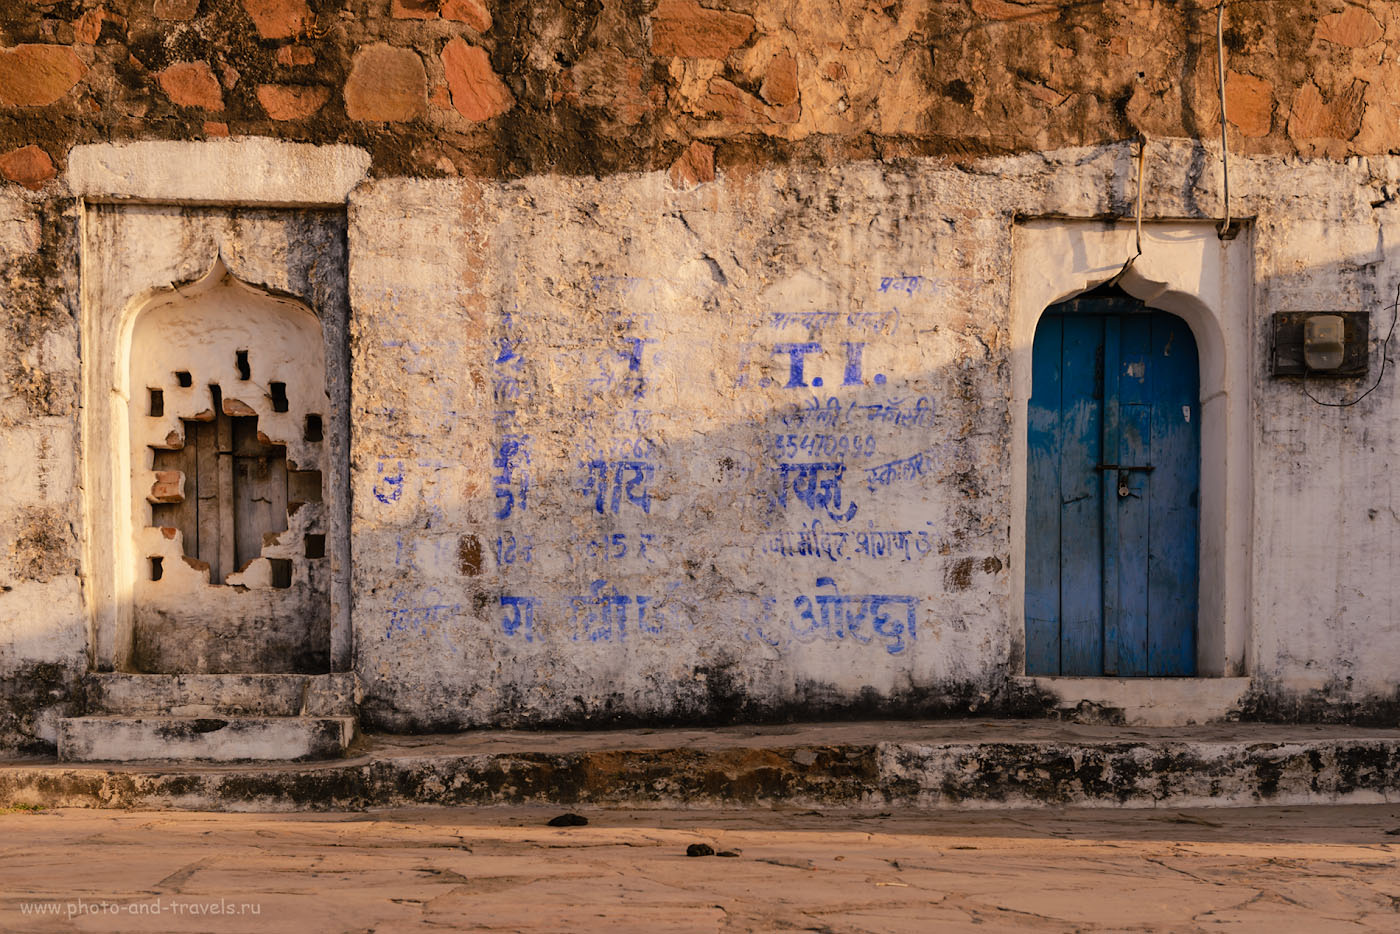 Фотография 7. Прогулка по Орчхе. Почувствуй настоящую Индию. 1/200, 7.1, 100, 44.